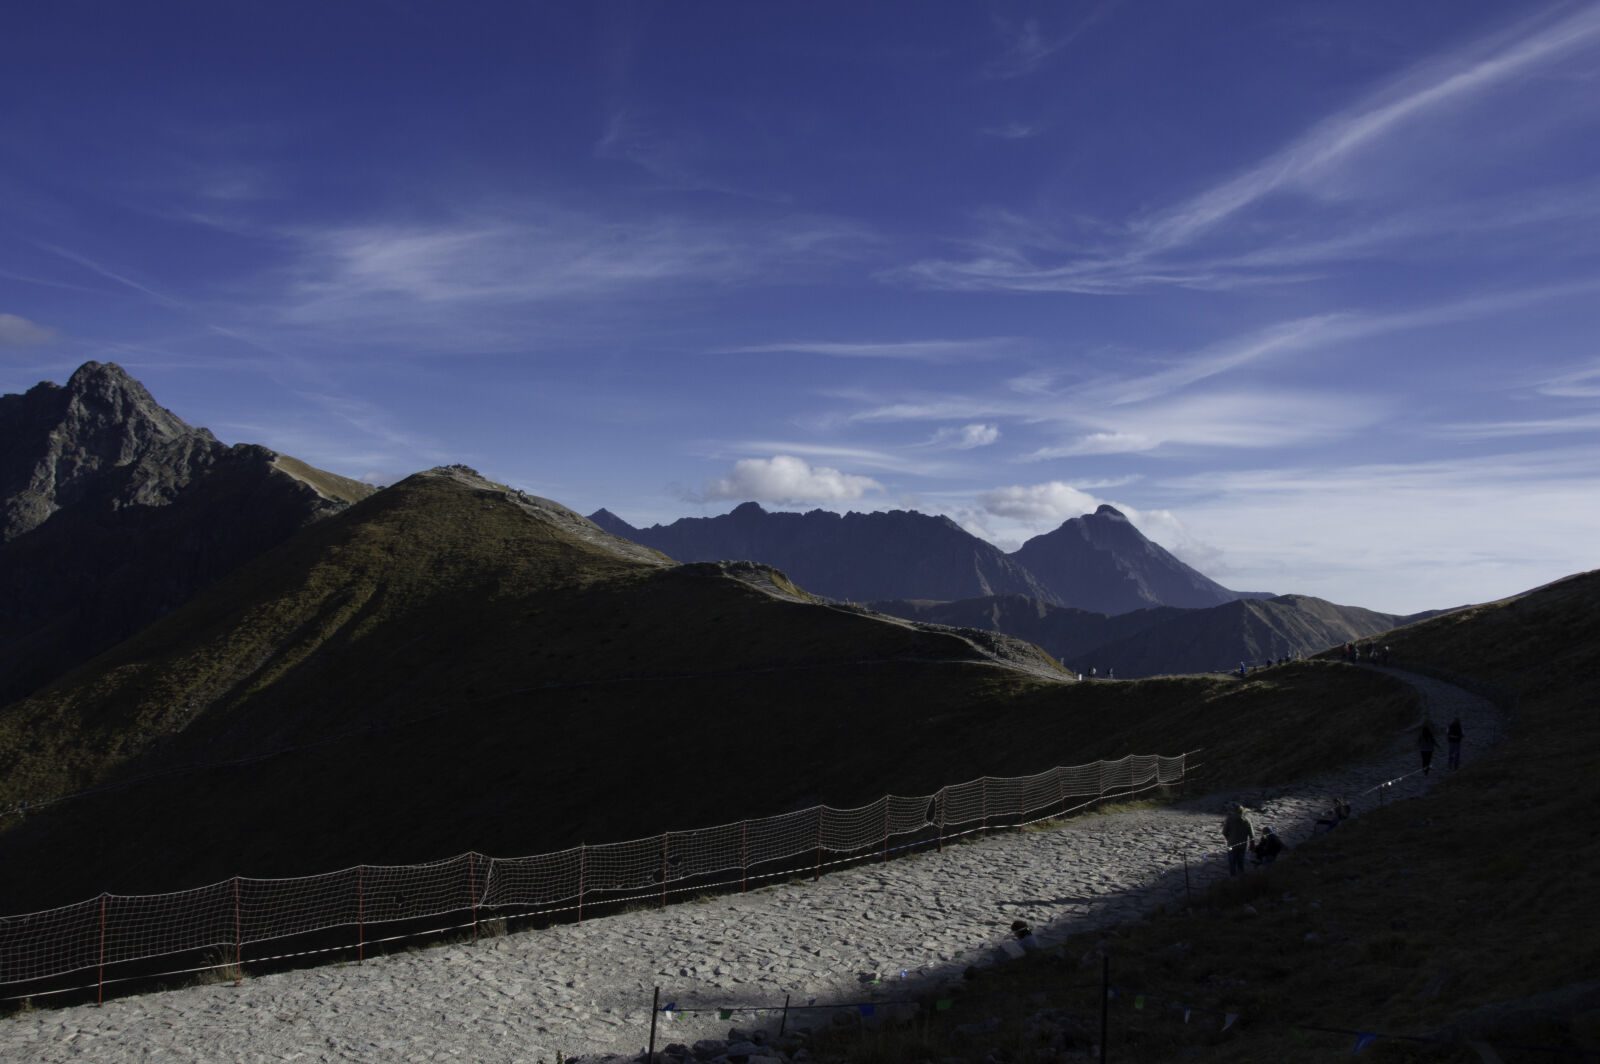 Nikon AF-S DX Nikkor 18-105mm F3.5-5.6G ED VR sample photo. Blue, sky, mountains, scenery photography